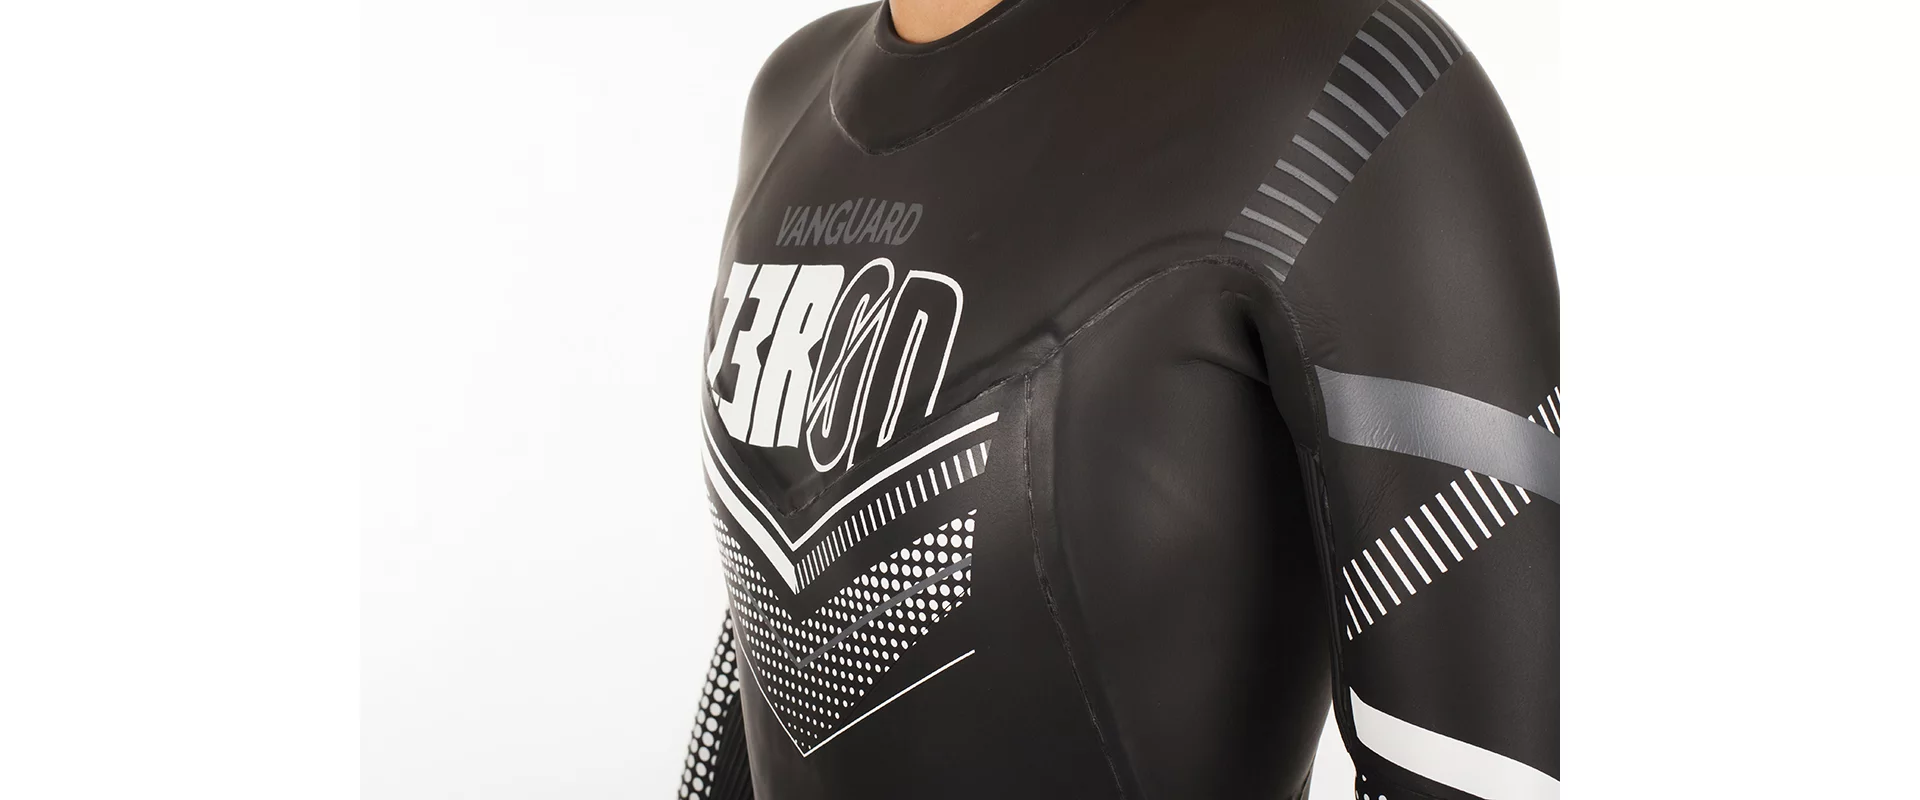 Z3R0D Vanguard Wetsuit W / Женский гидрокостюм для триатлона и открытой воды фото 7